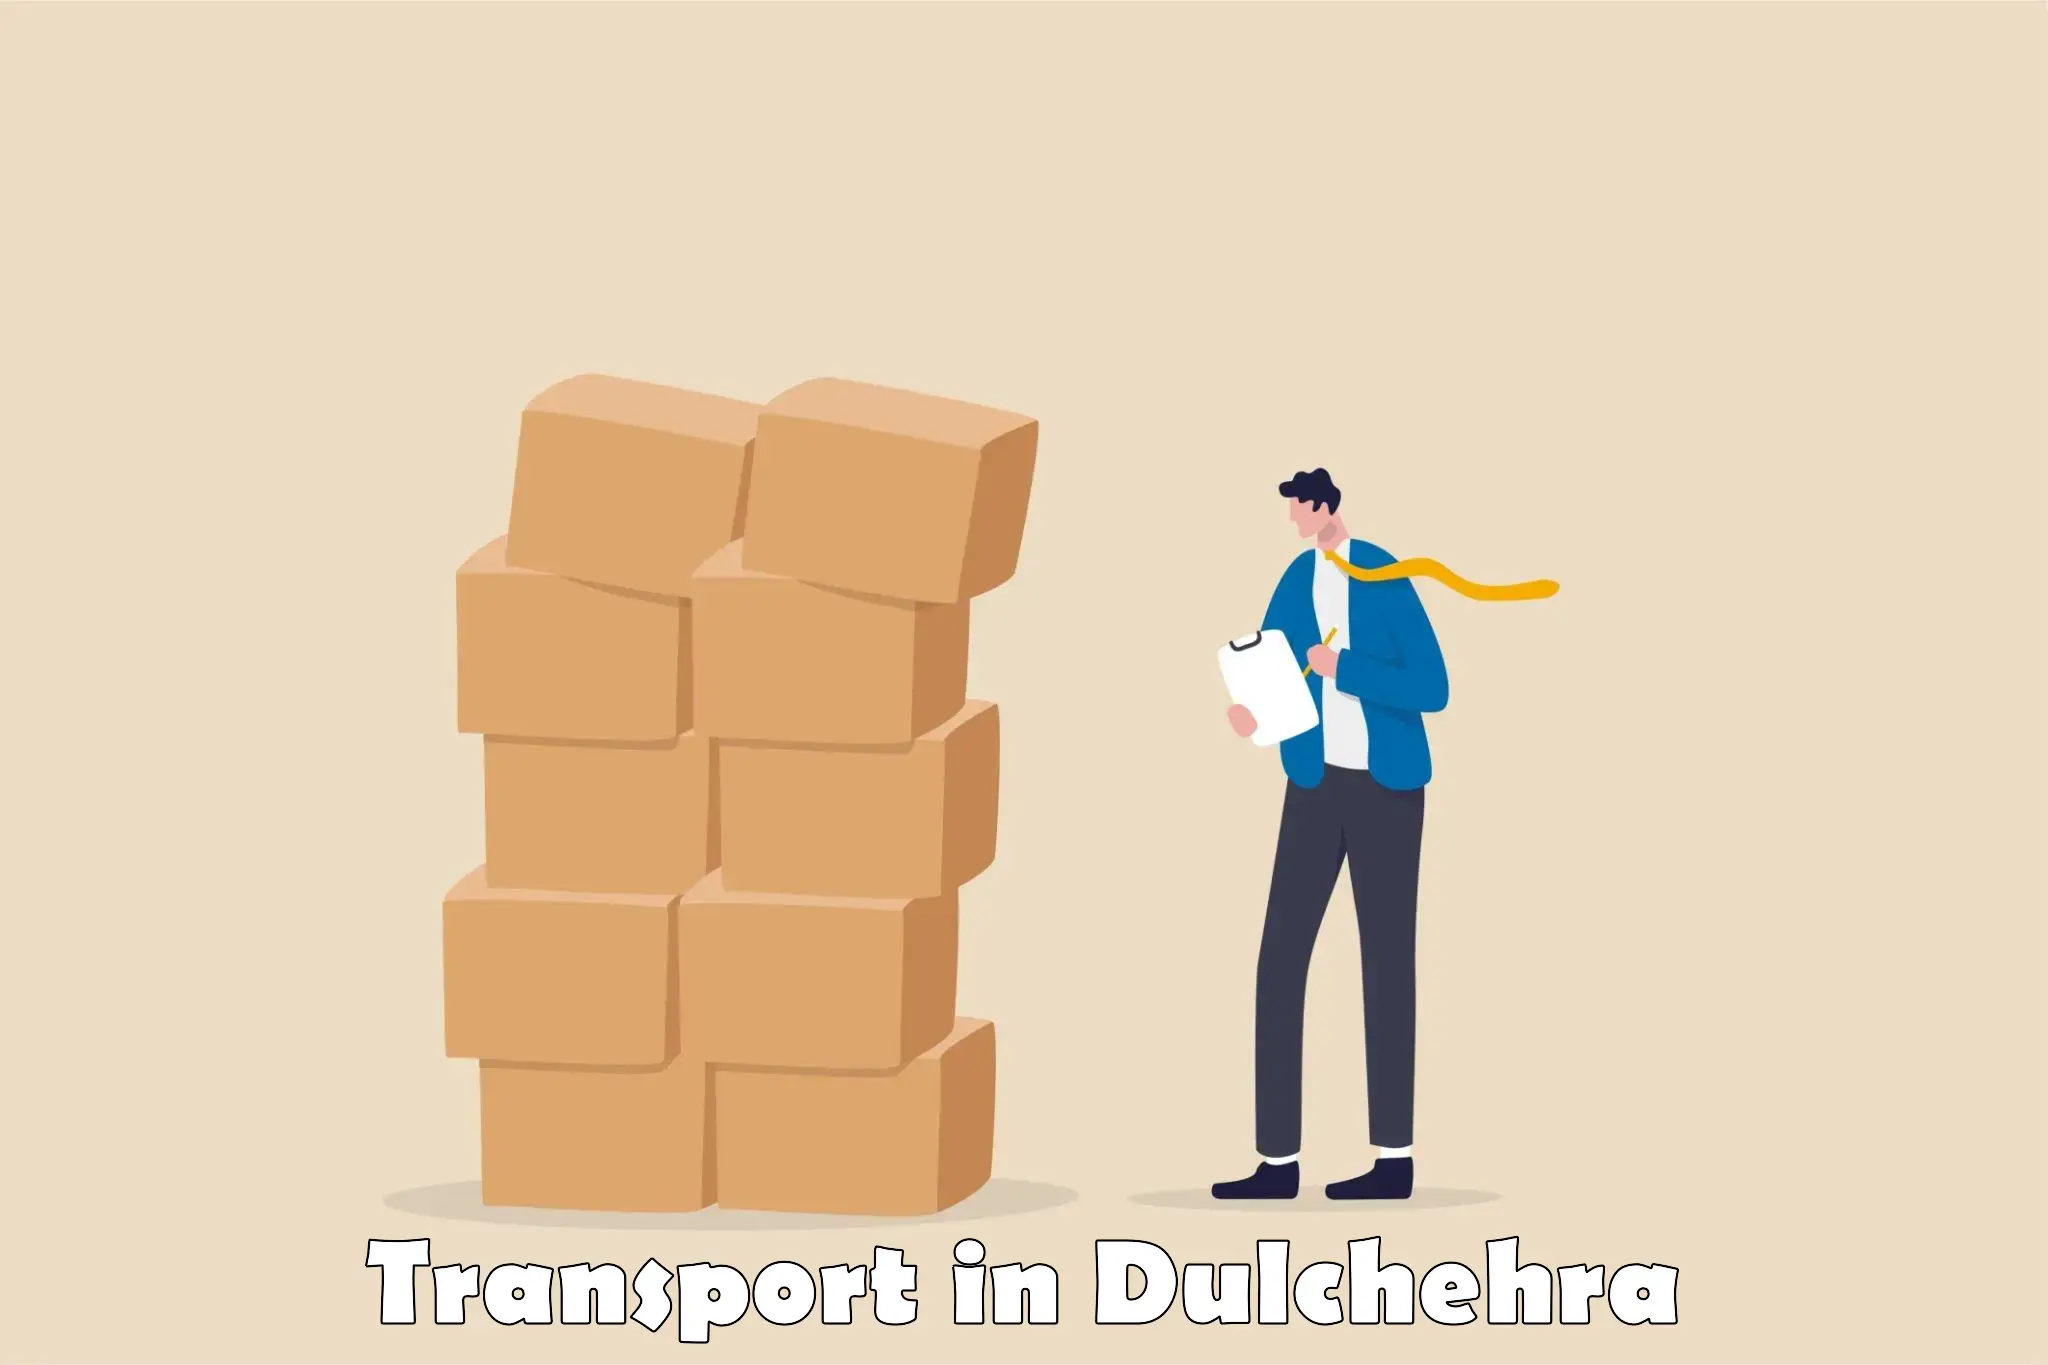 Road transport online services in Dulchehra